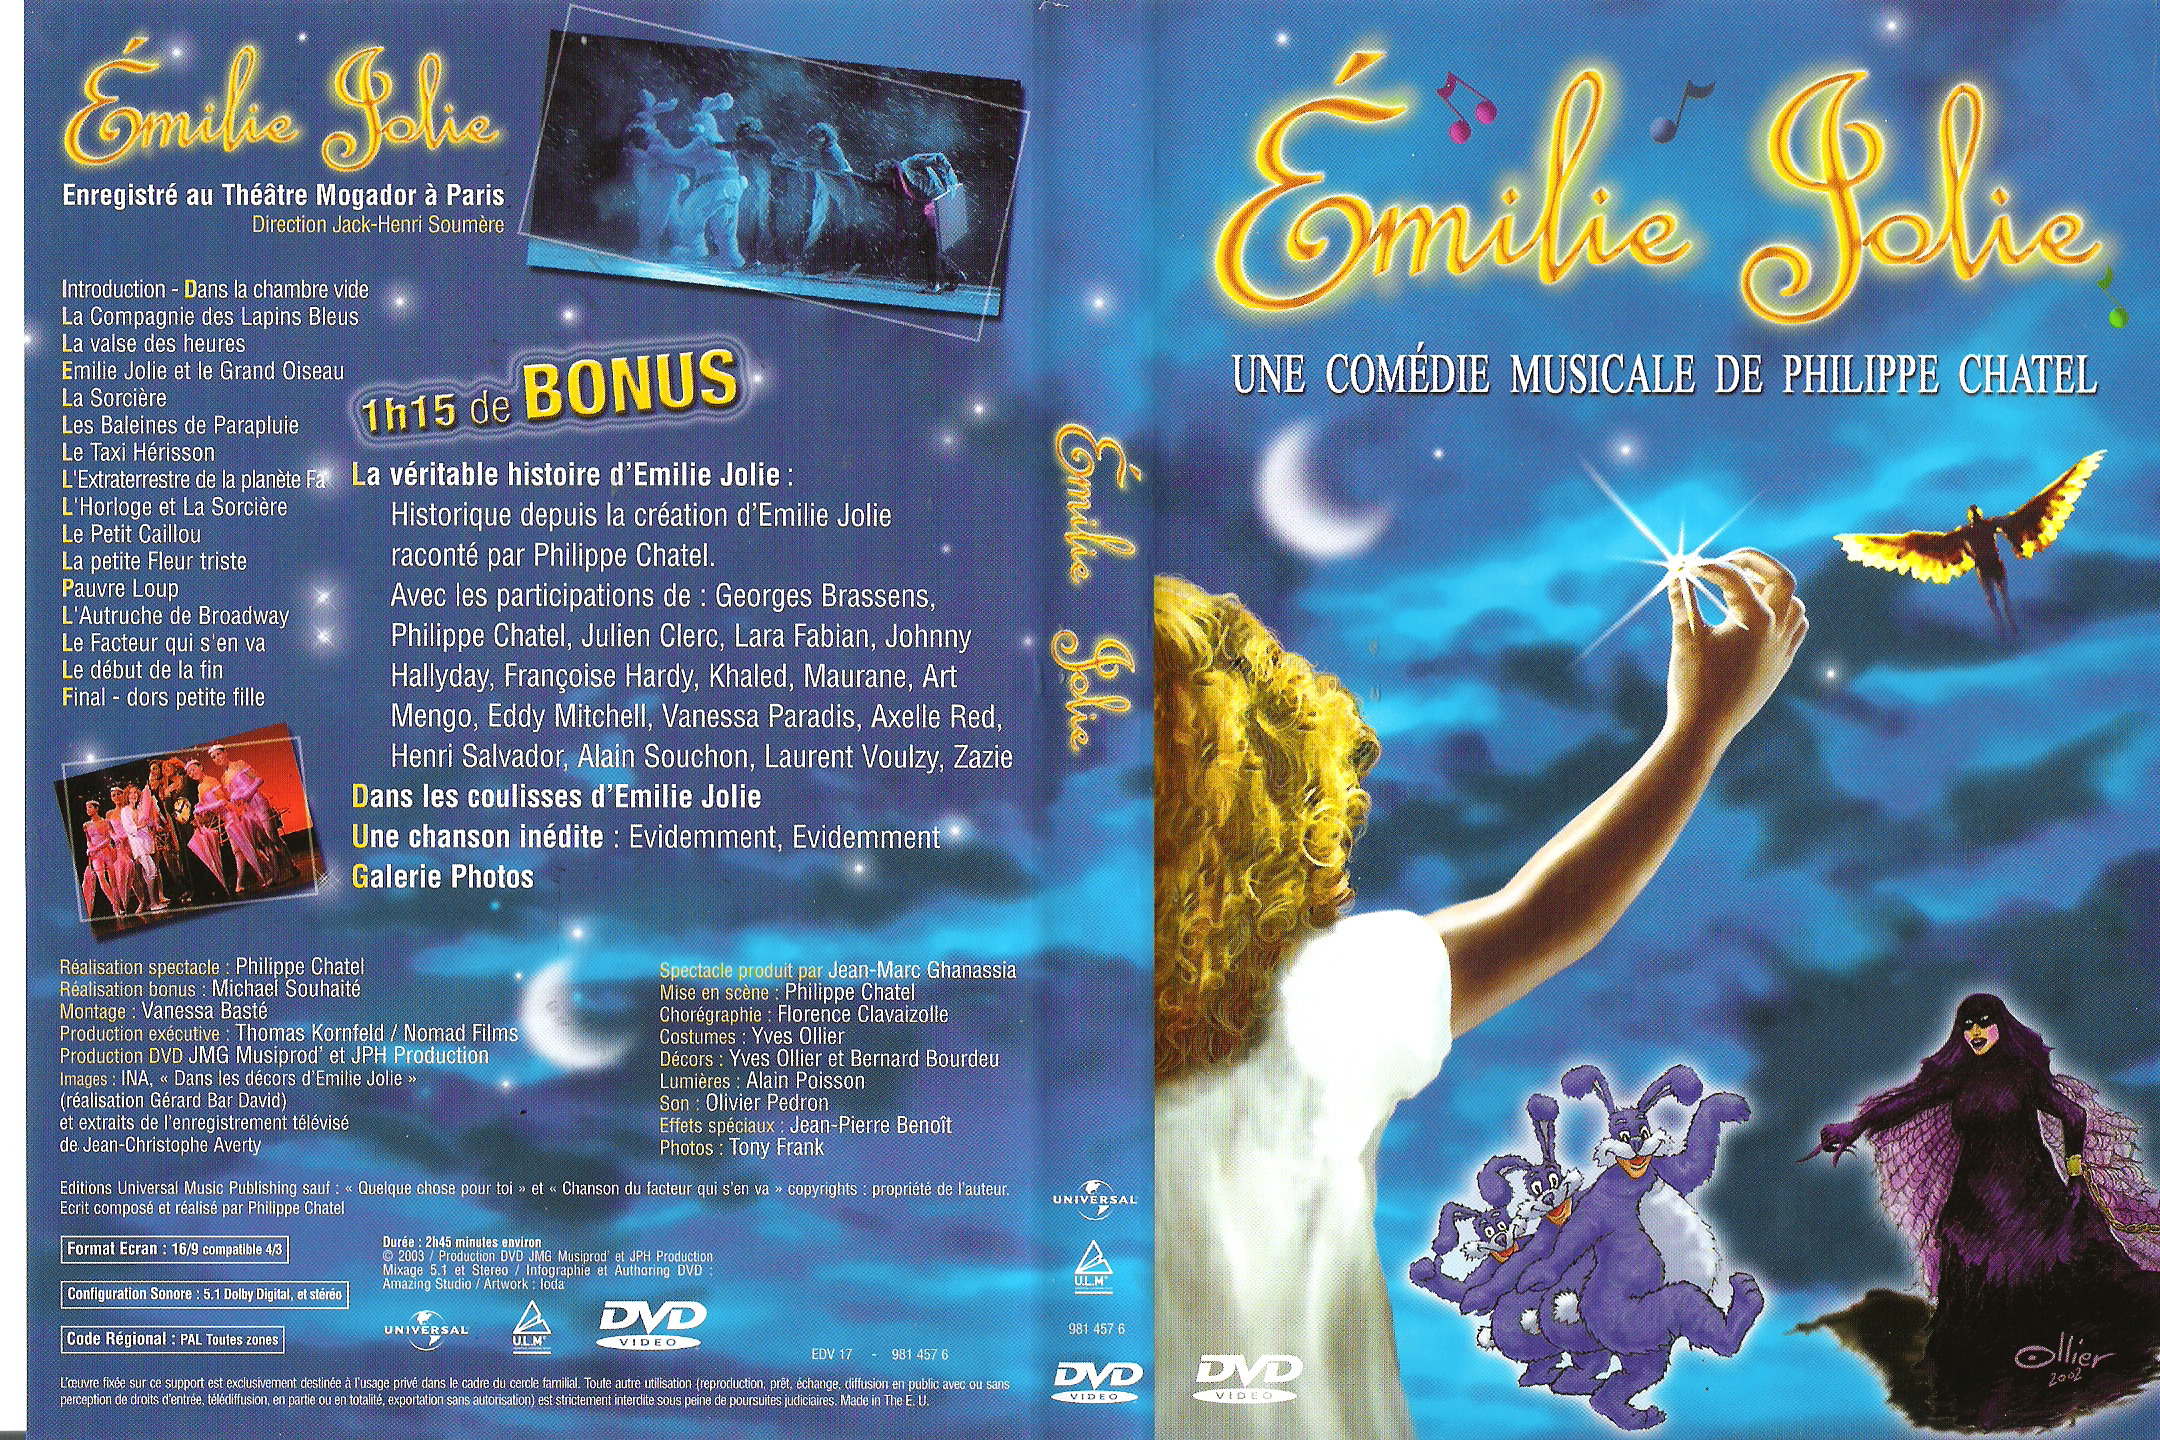 Jaquette DVD Emilie Jolie la comdie musicale